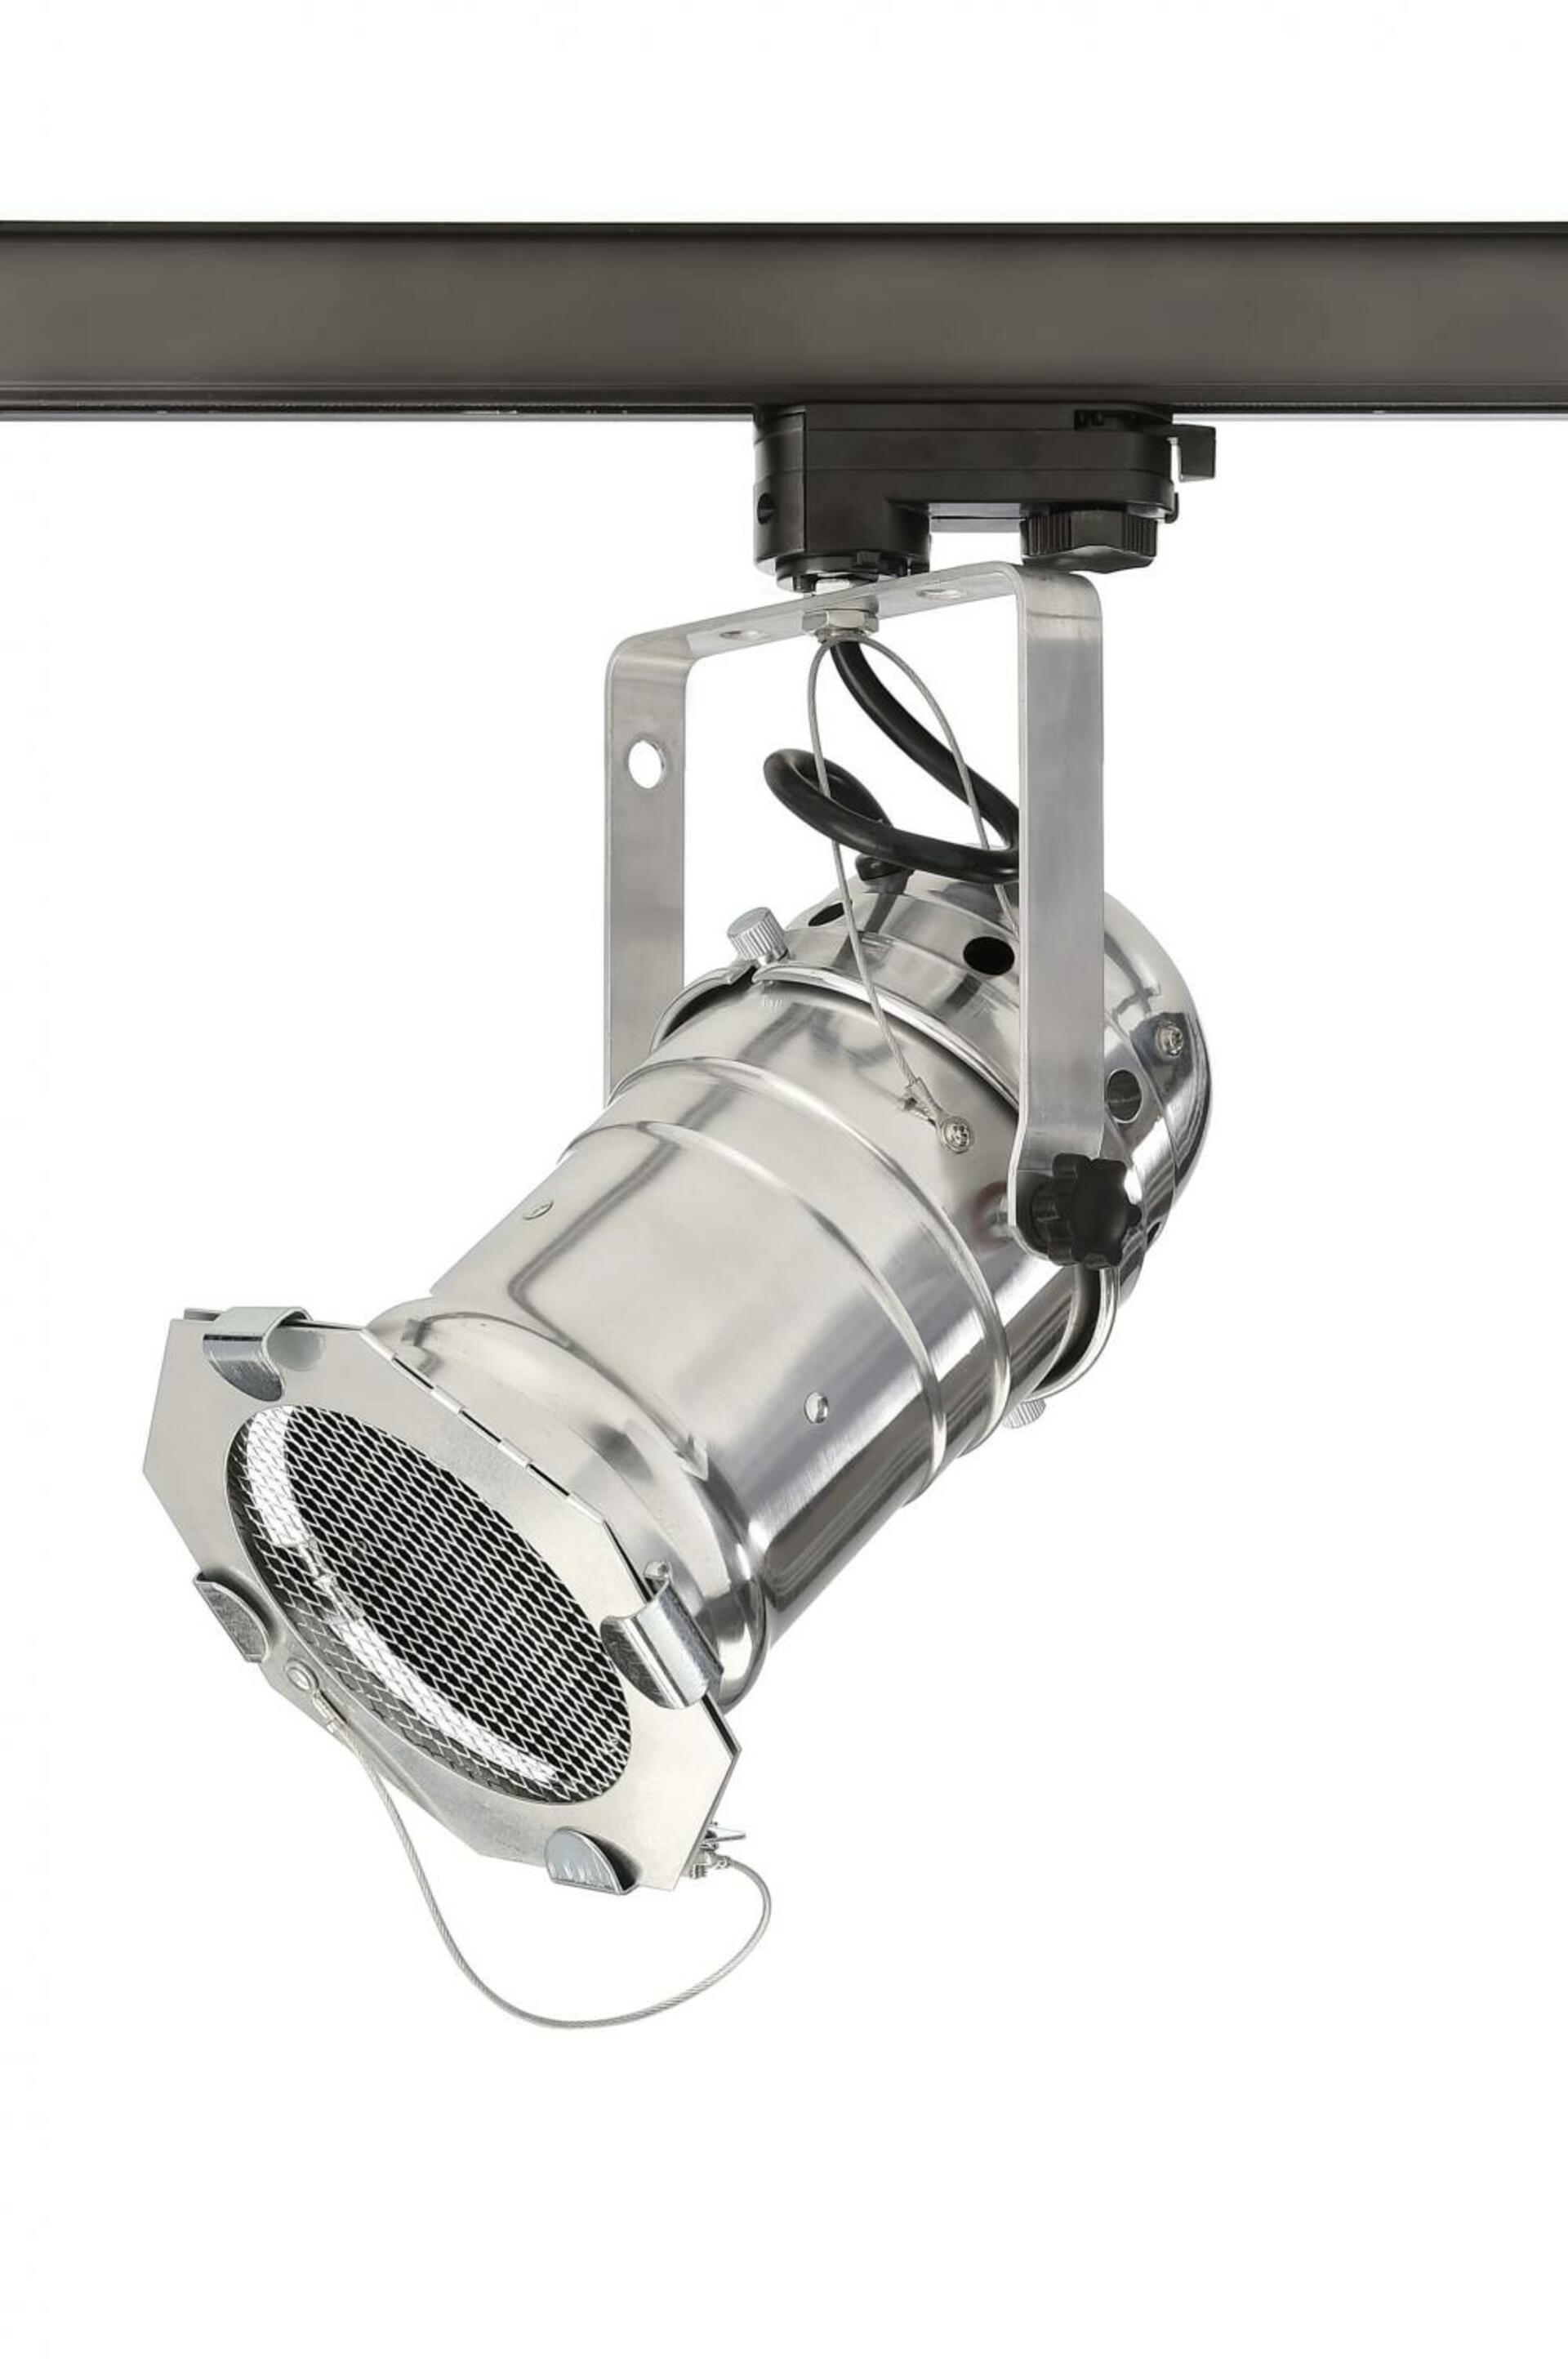 Light Impressions Deko-Light kolejnicový systém 3-fázový 230V Studio PAR 30 220-240V AC/50-60Hz E27 1x max. 42,00 W stříbrná 270,75 707083